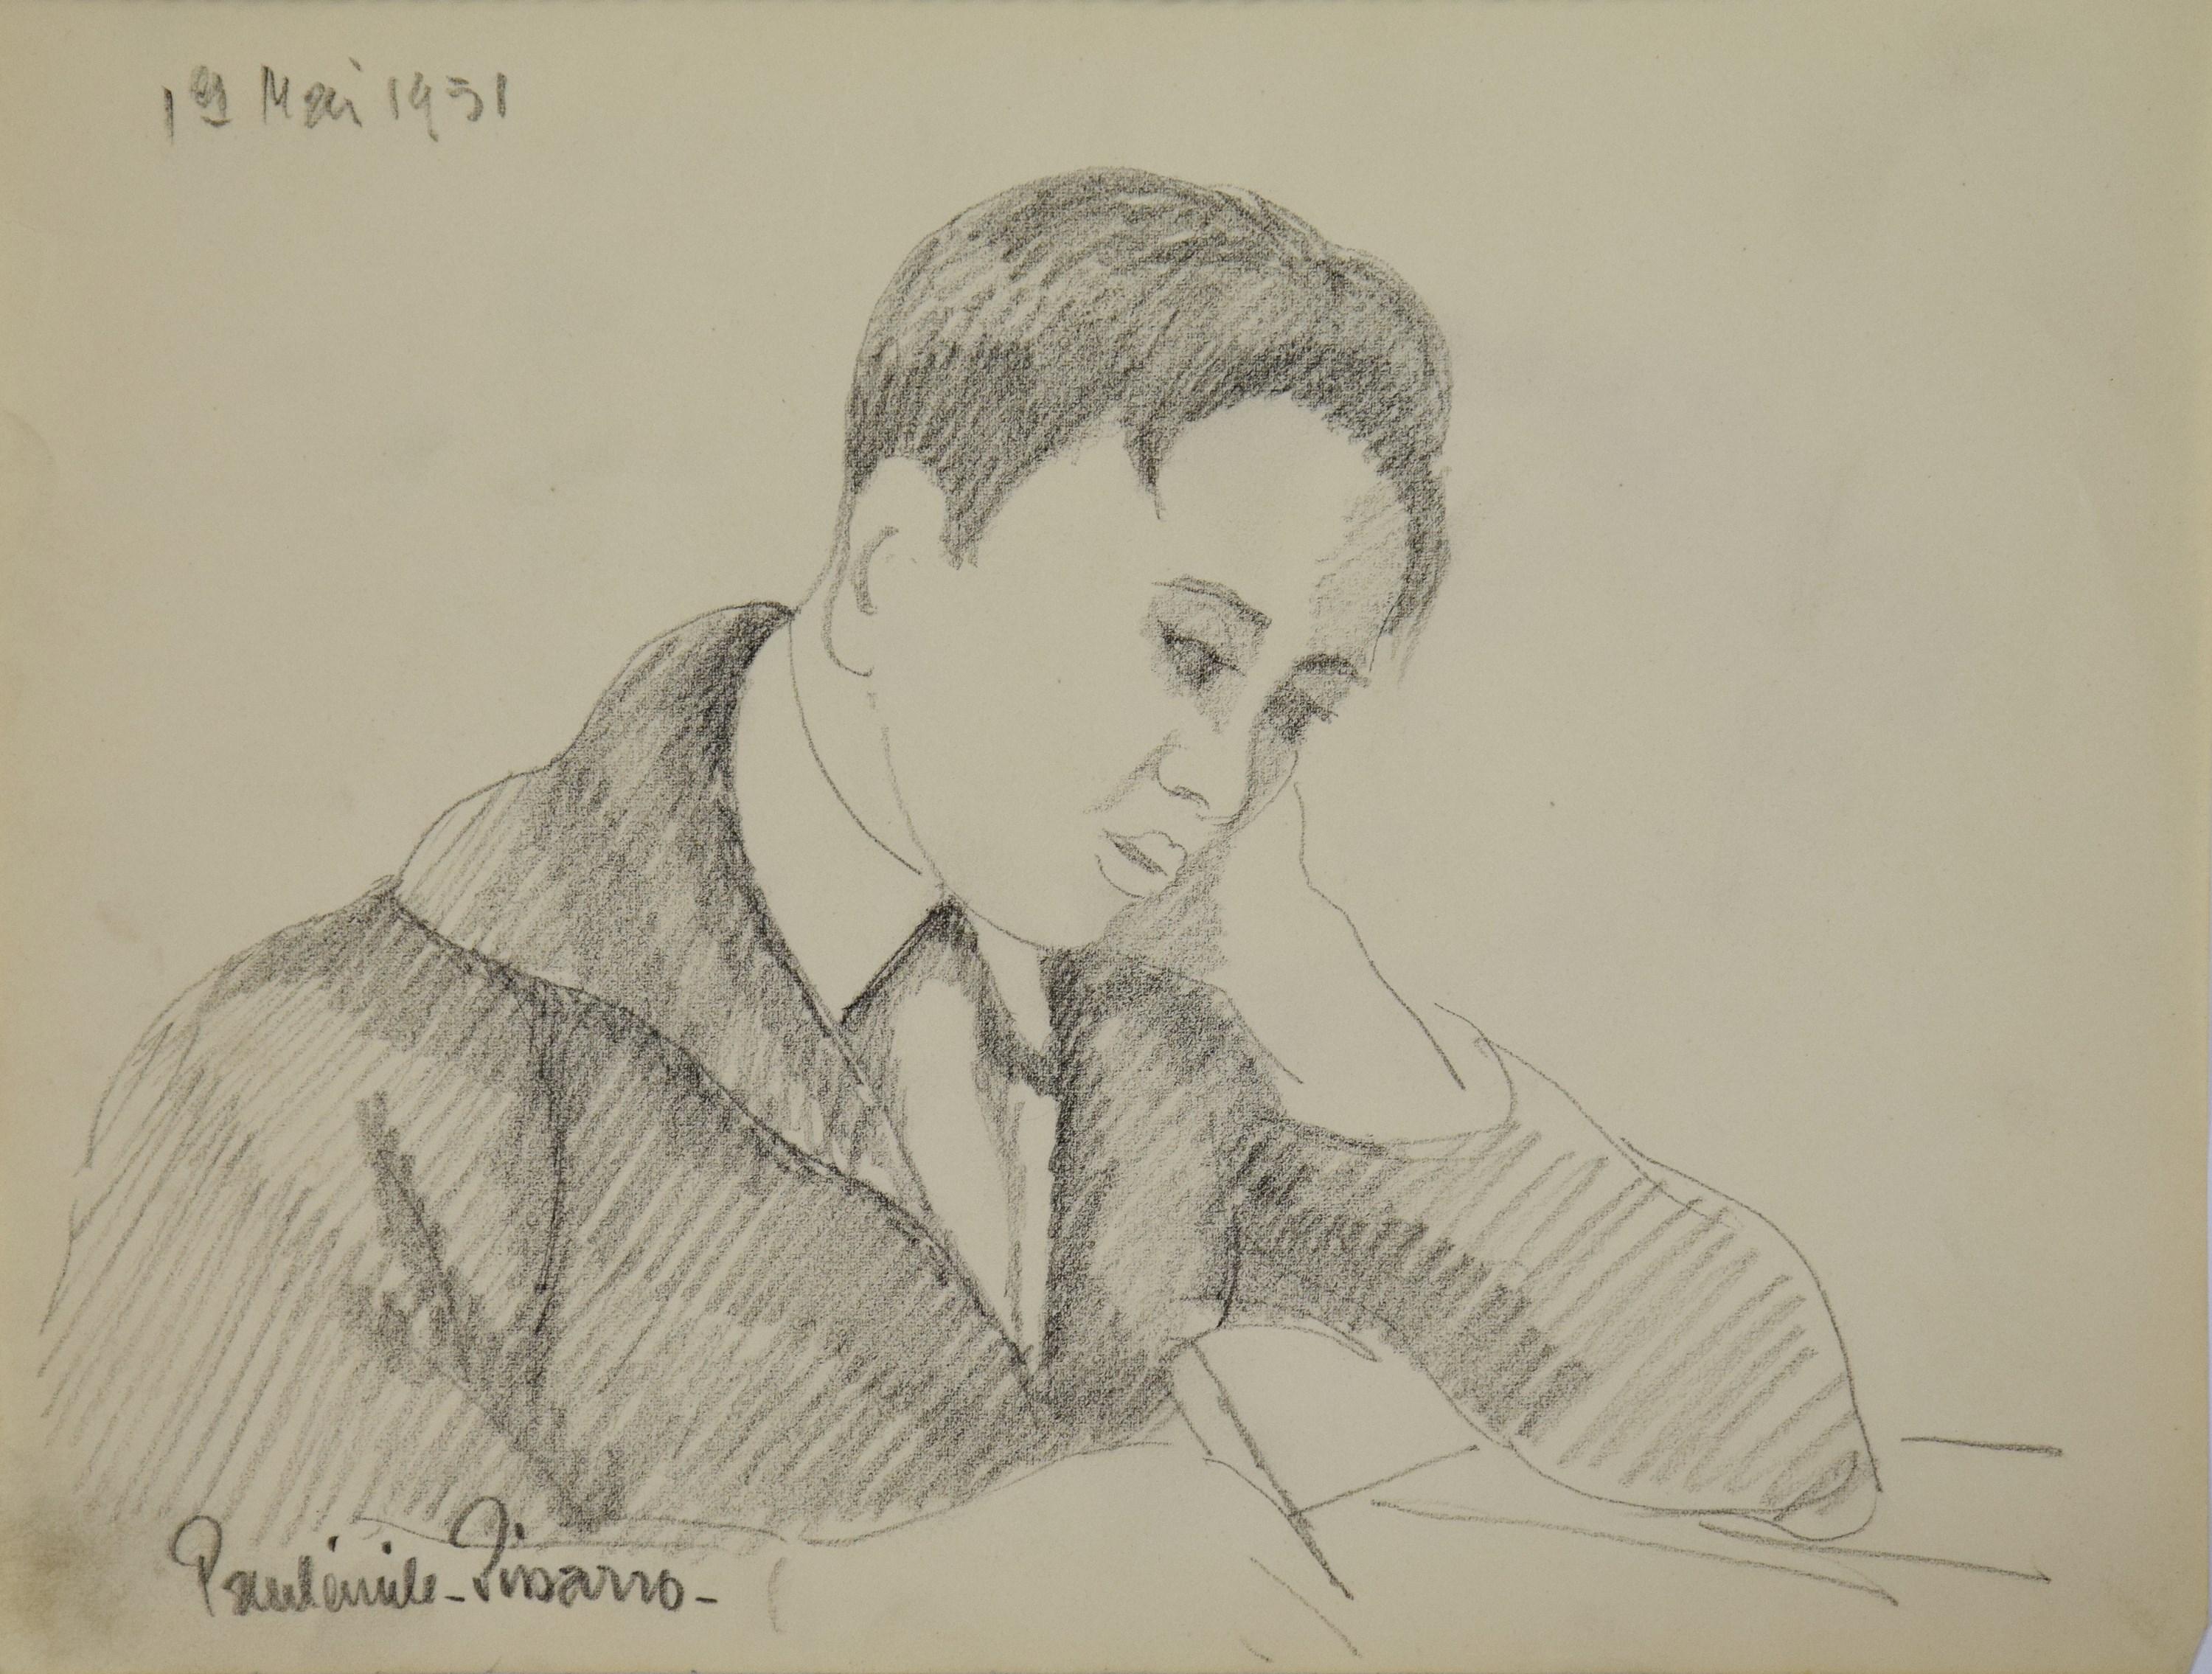 Les Devoirs von Paulmile Pissarro, 1951